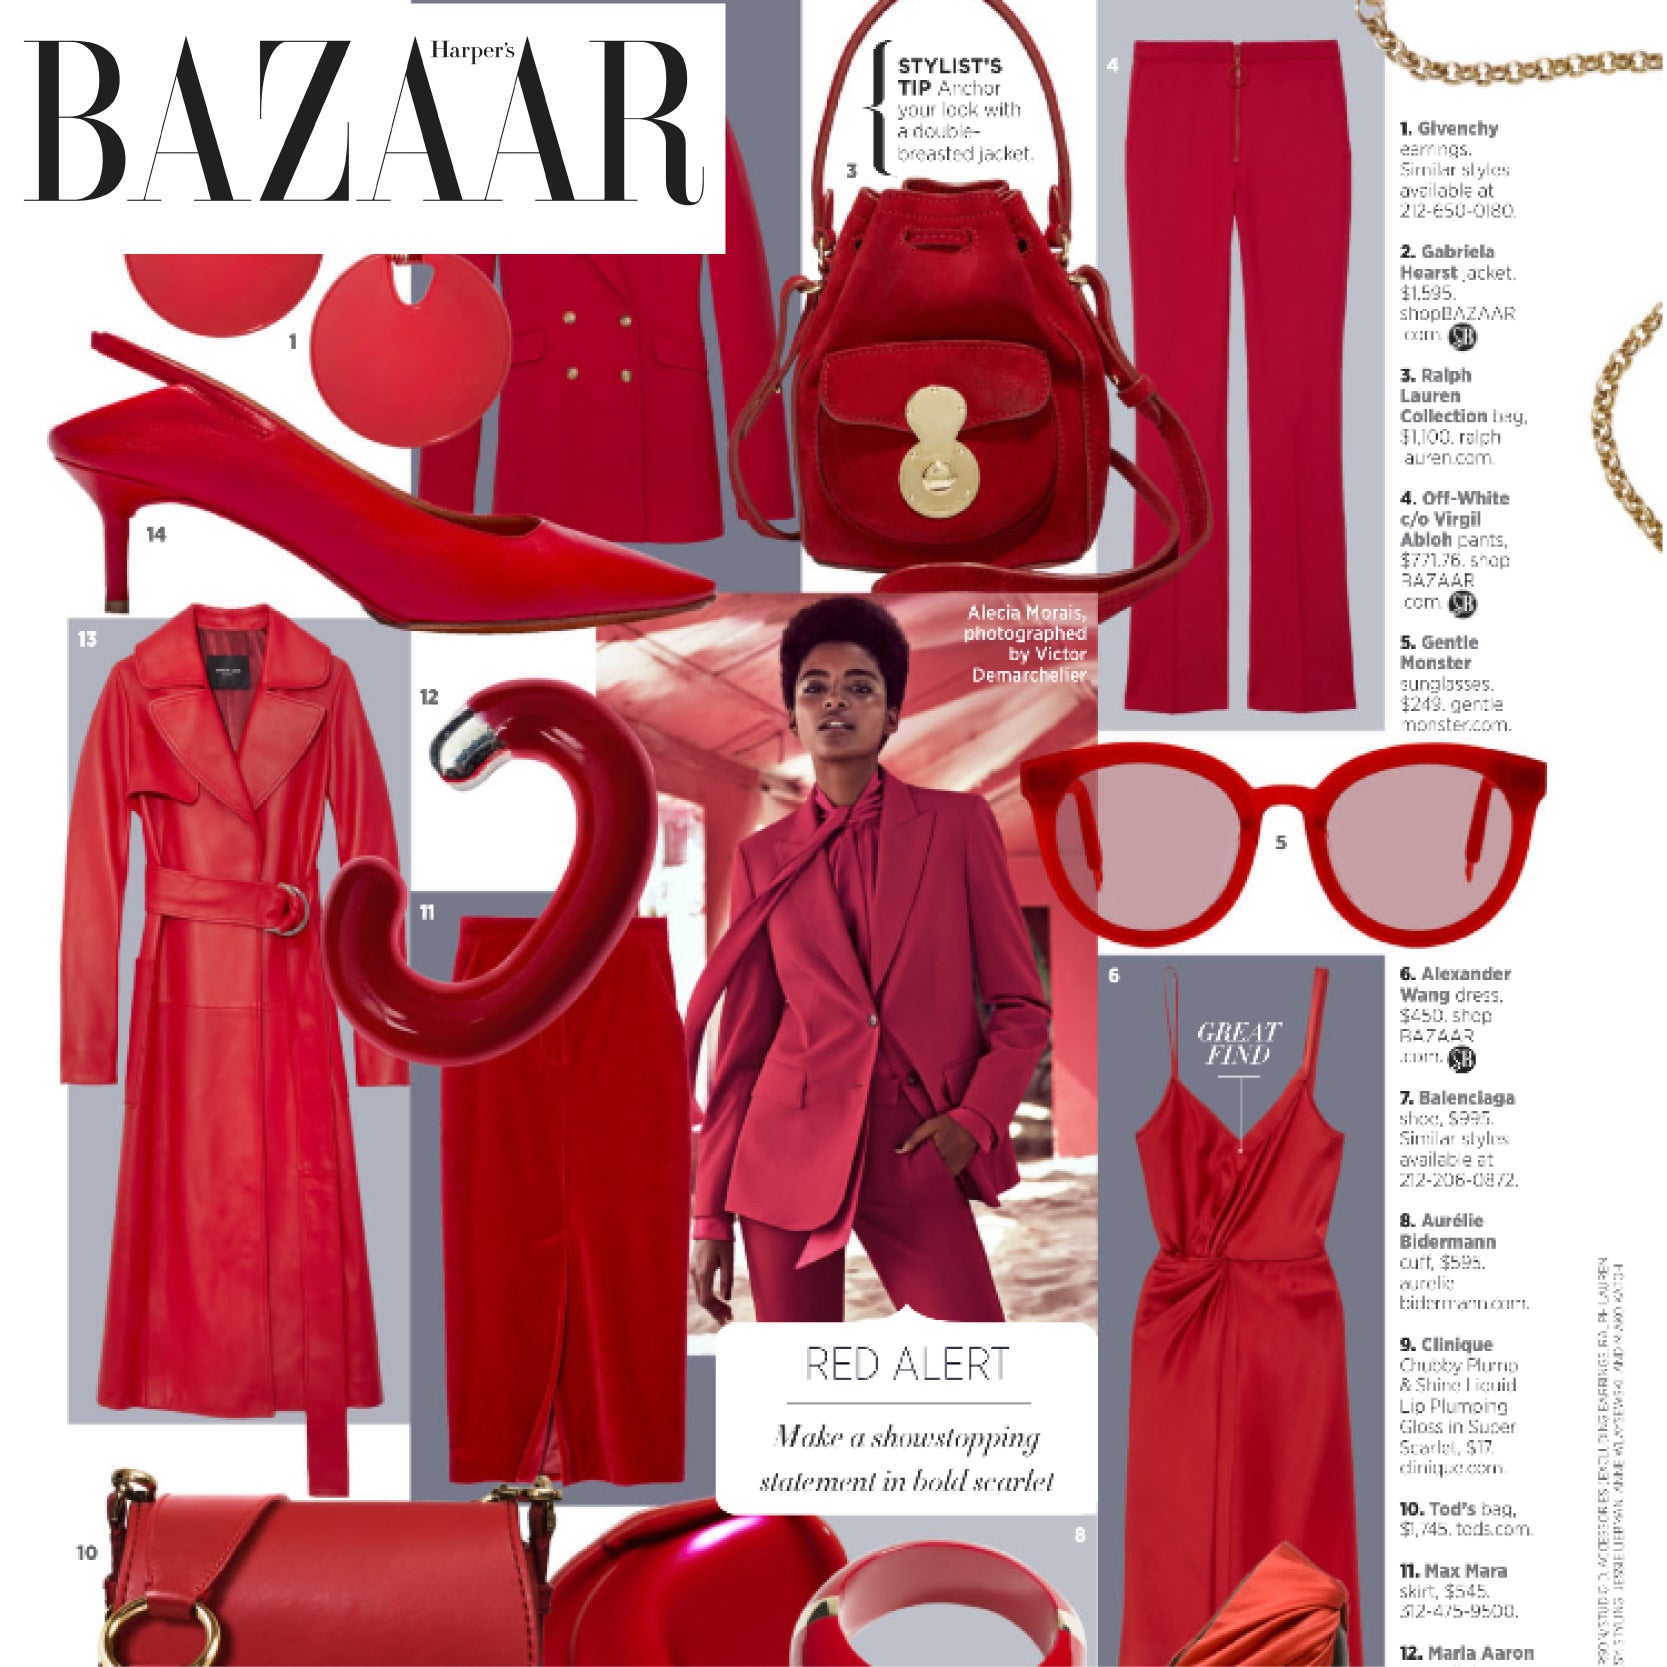 Harper's Bazaar, Red Alert